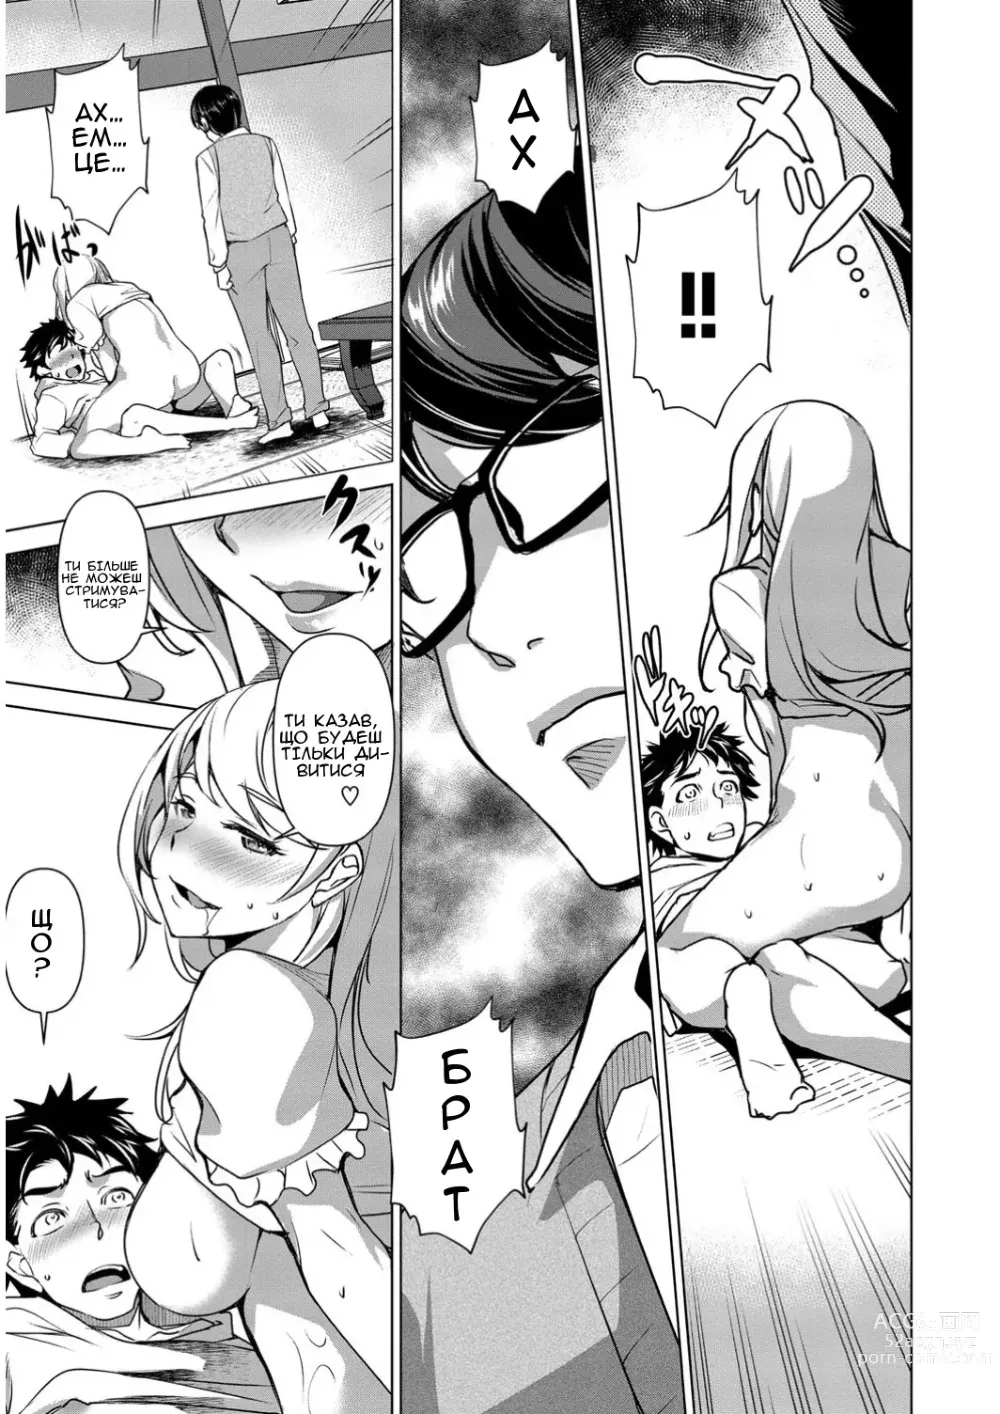 Page 13 of manga Моя невістка має погану алкогольну звичку